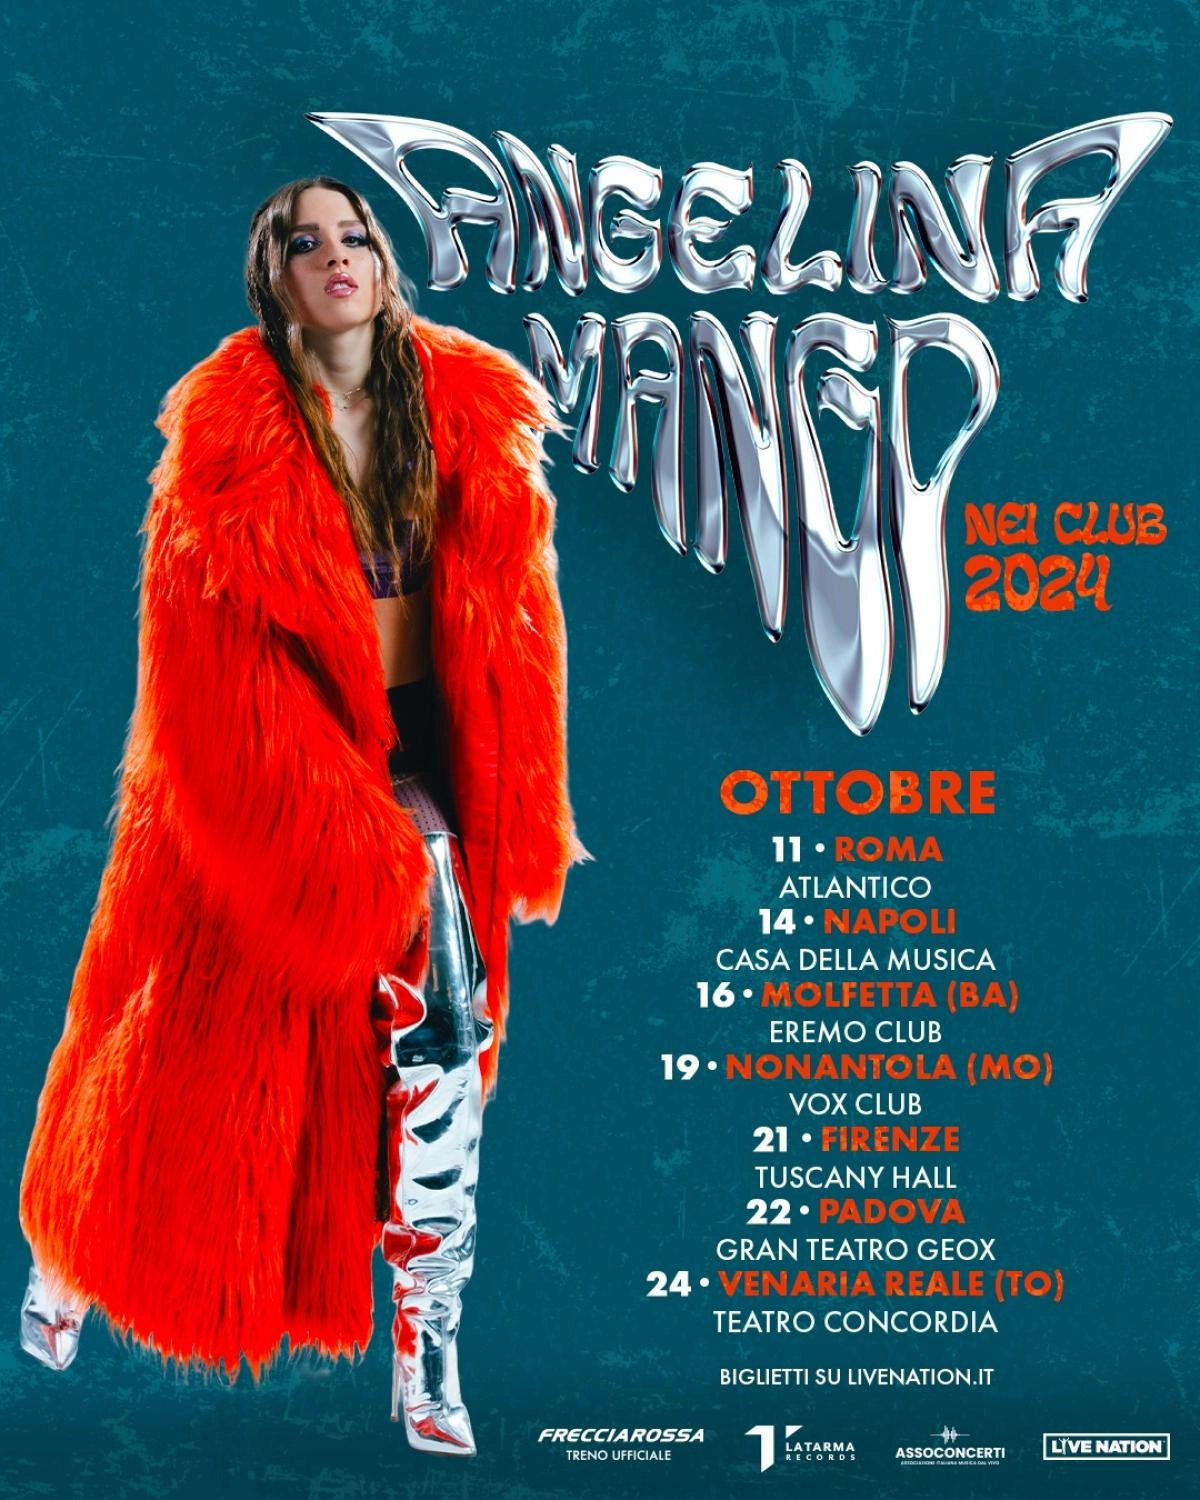 Angelina Mango - Nei Club 2024 at Atlantico Roma Tickets